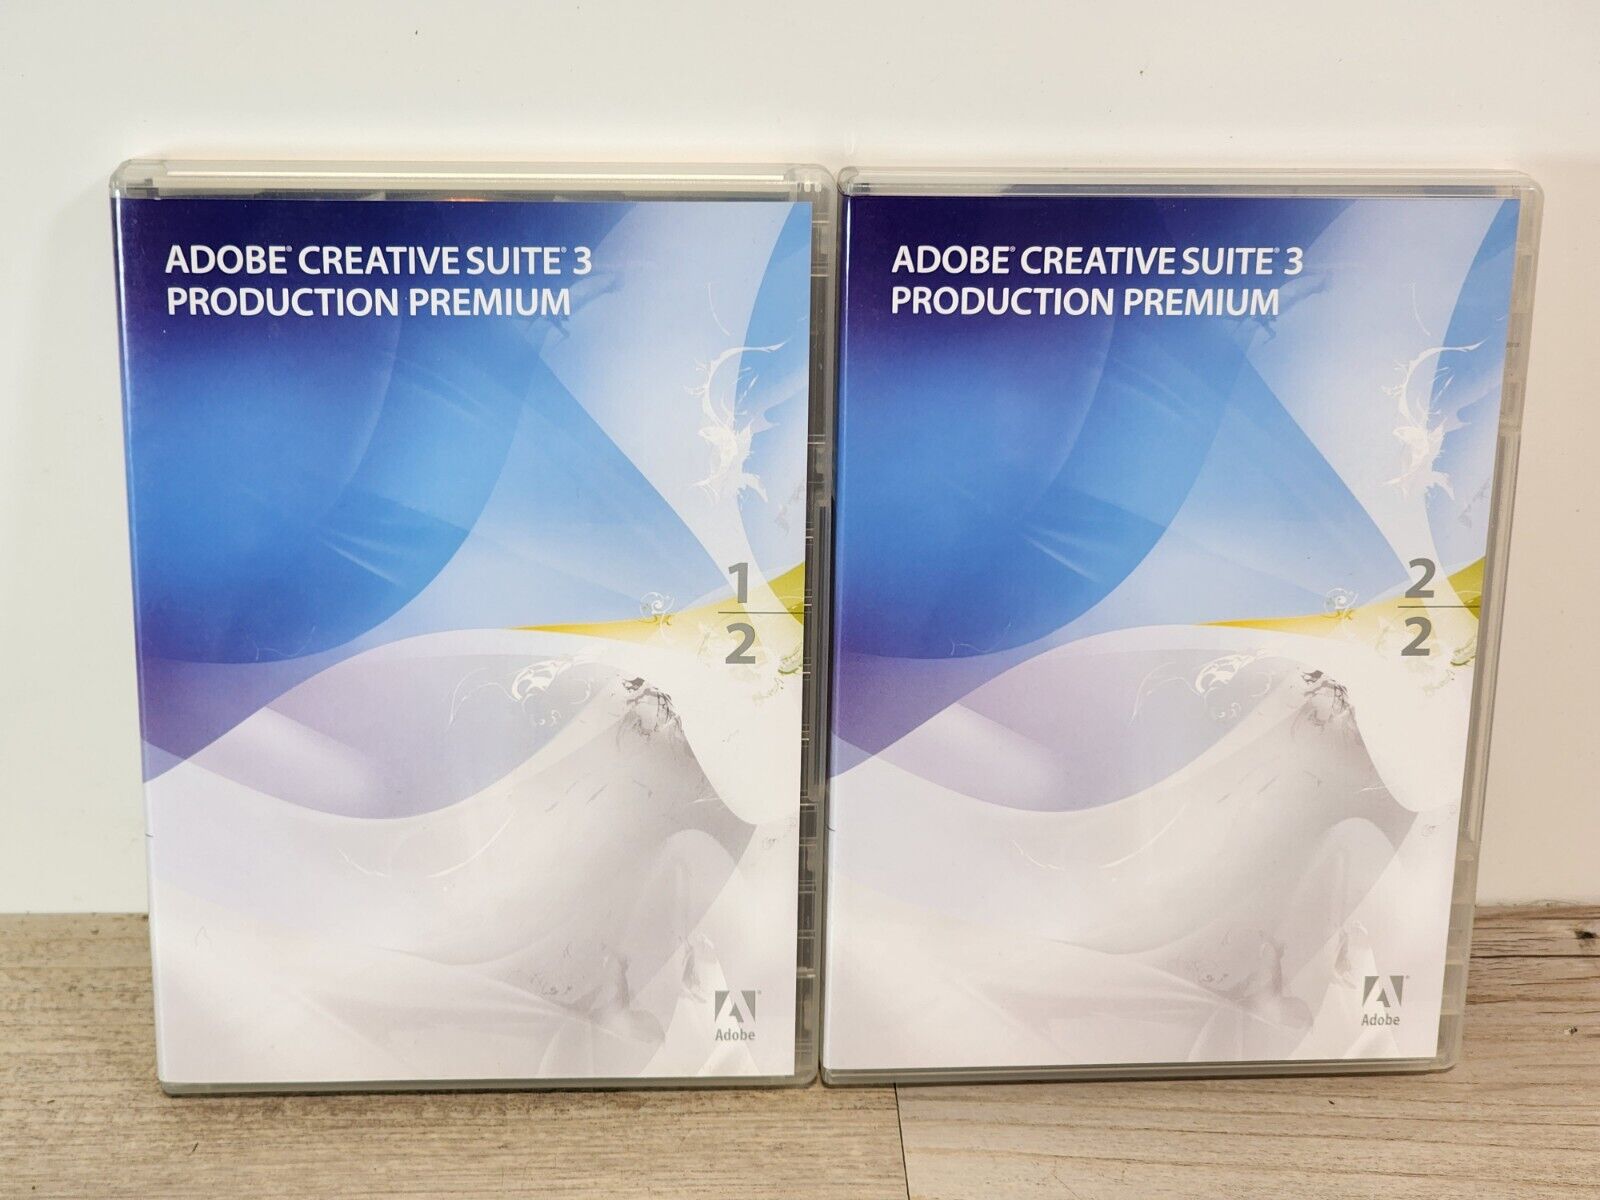 Adobe Creative Suite 3 Production Premium for Apple Mac